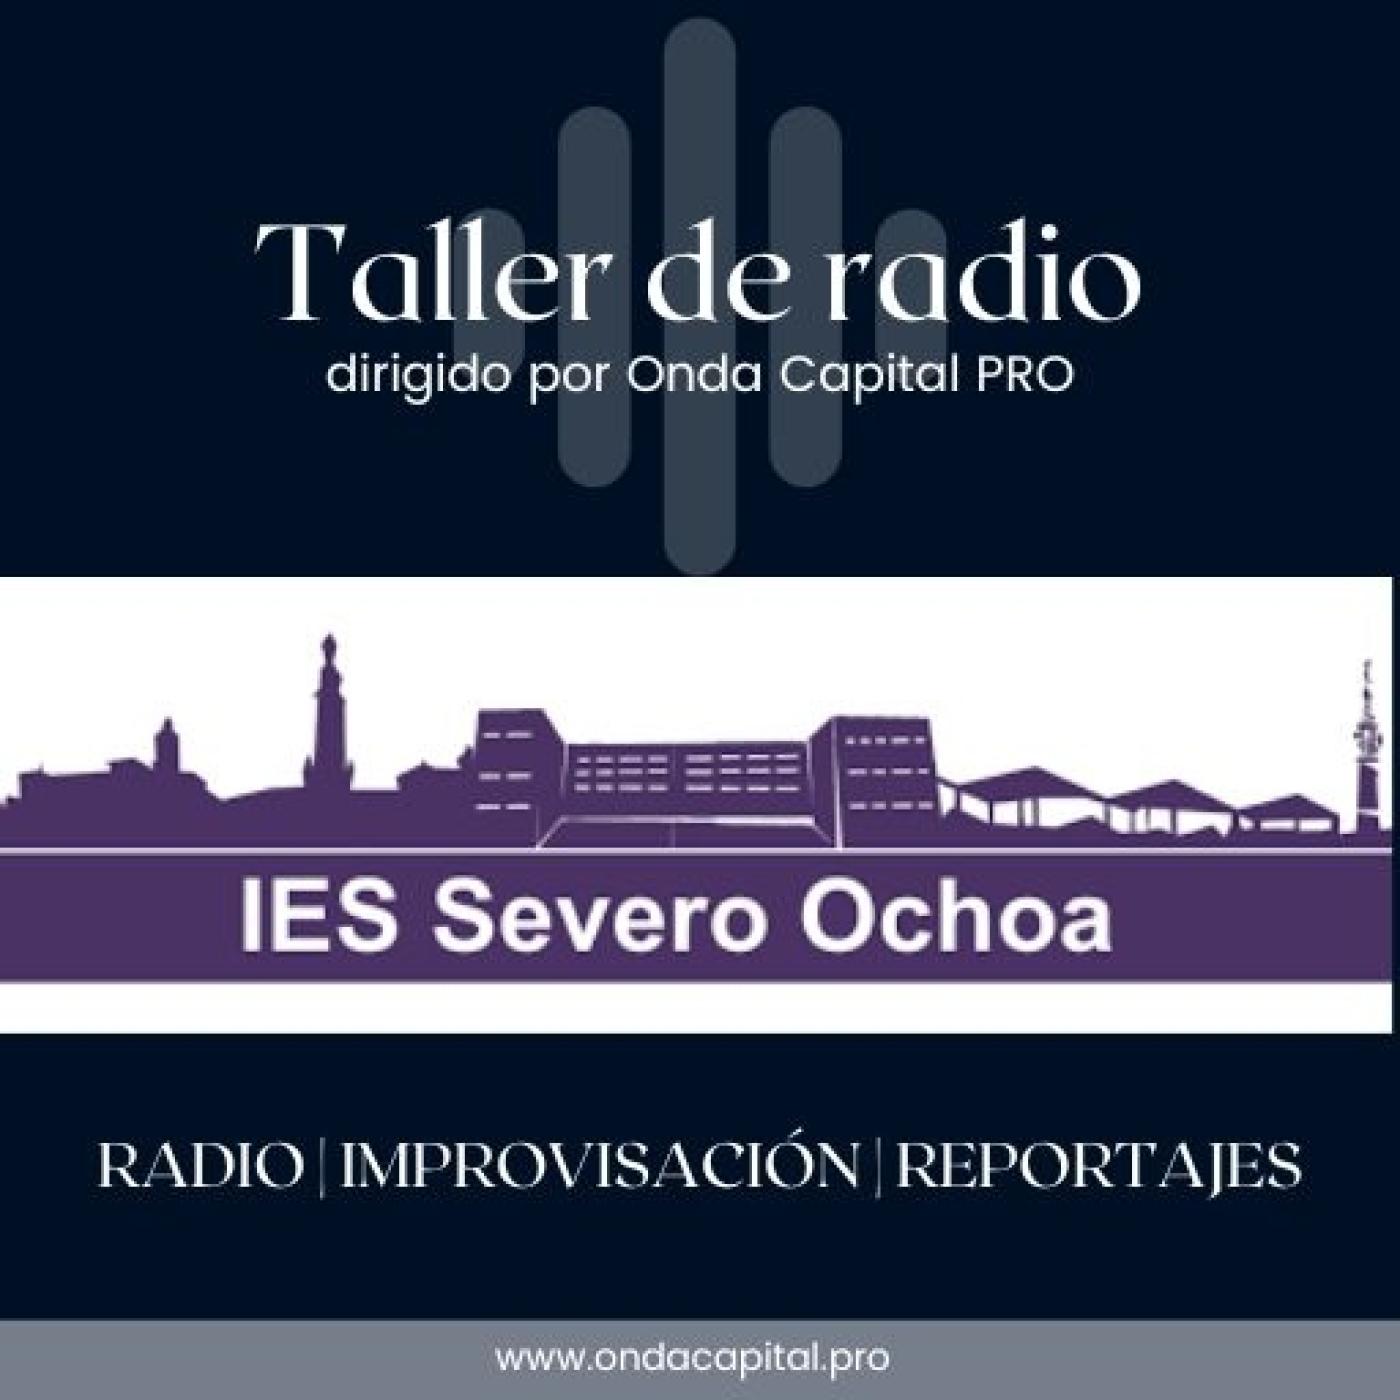 Taller de radio en IES Severo Ochoa